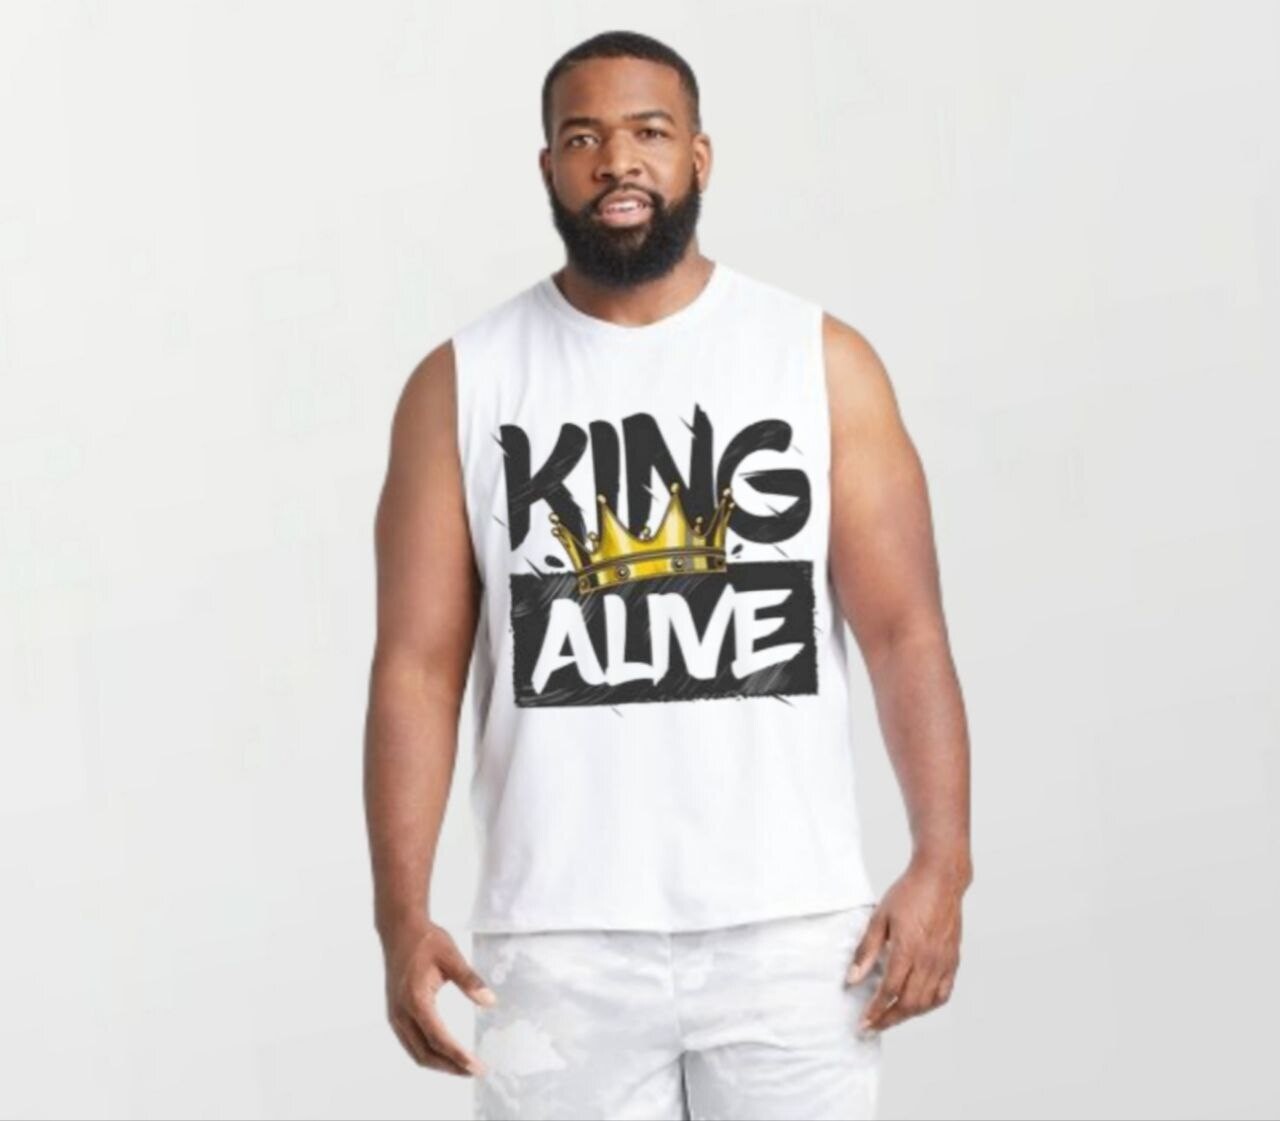 King alive_Elite Sleeveless Tee white